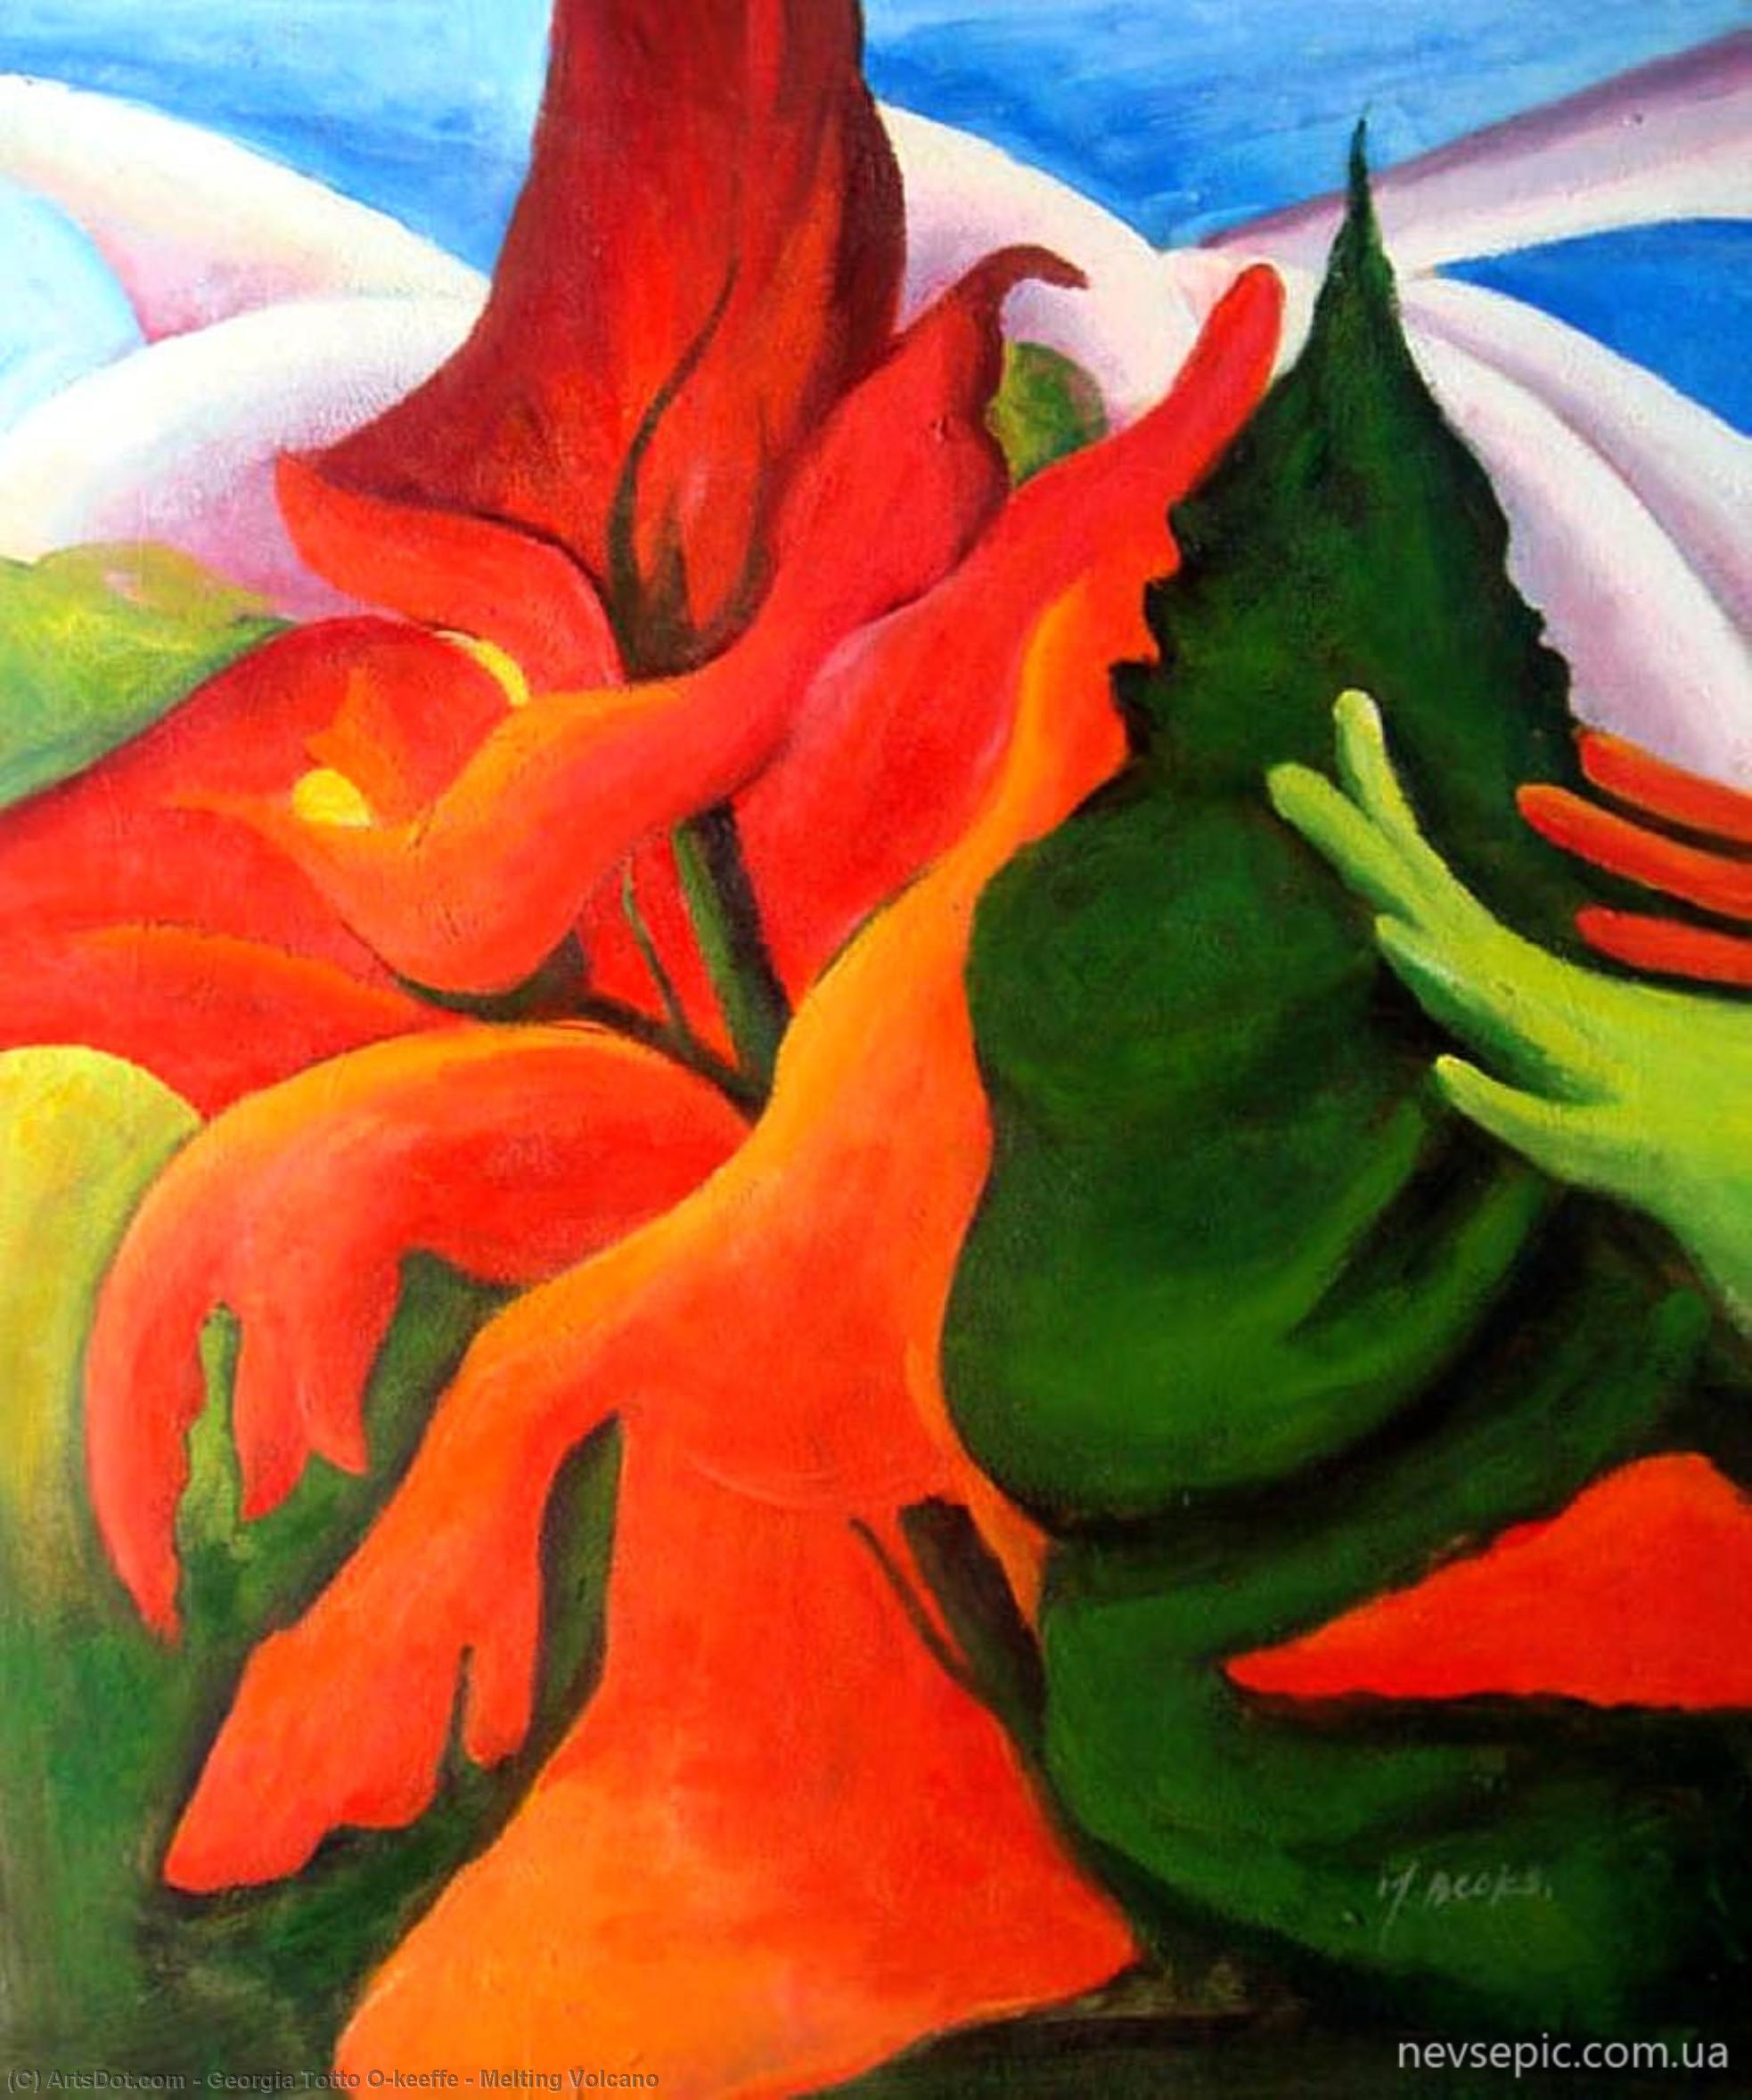 Wikioo.org - Bách khoa toàn thư về mỹ thuật - Vẽ tranh, Tác phẩm nghệ thuật Georgia Totto O'keeffe - Melting Volcano